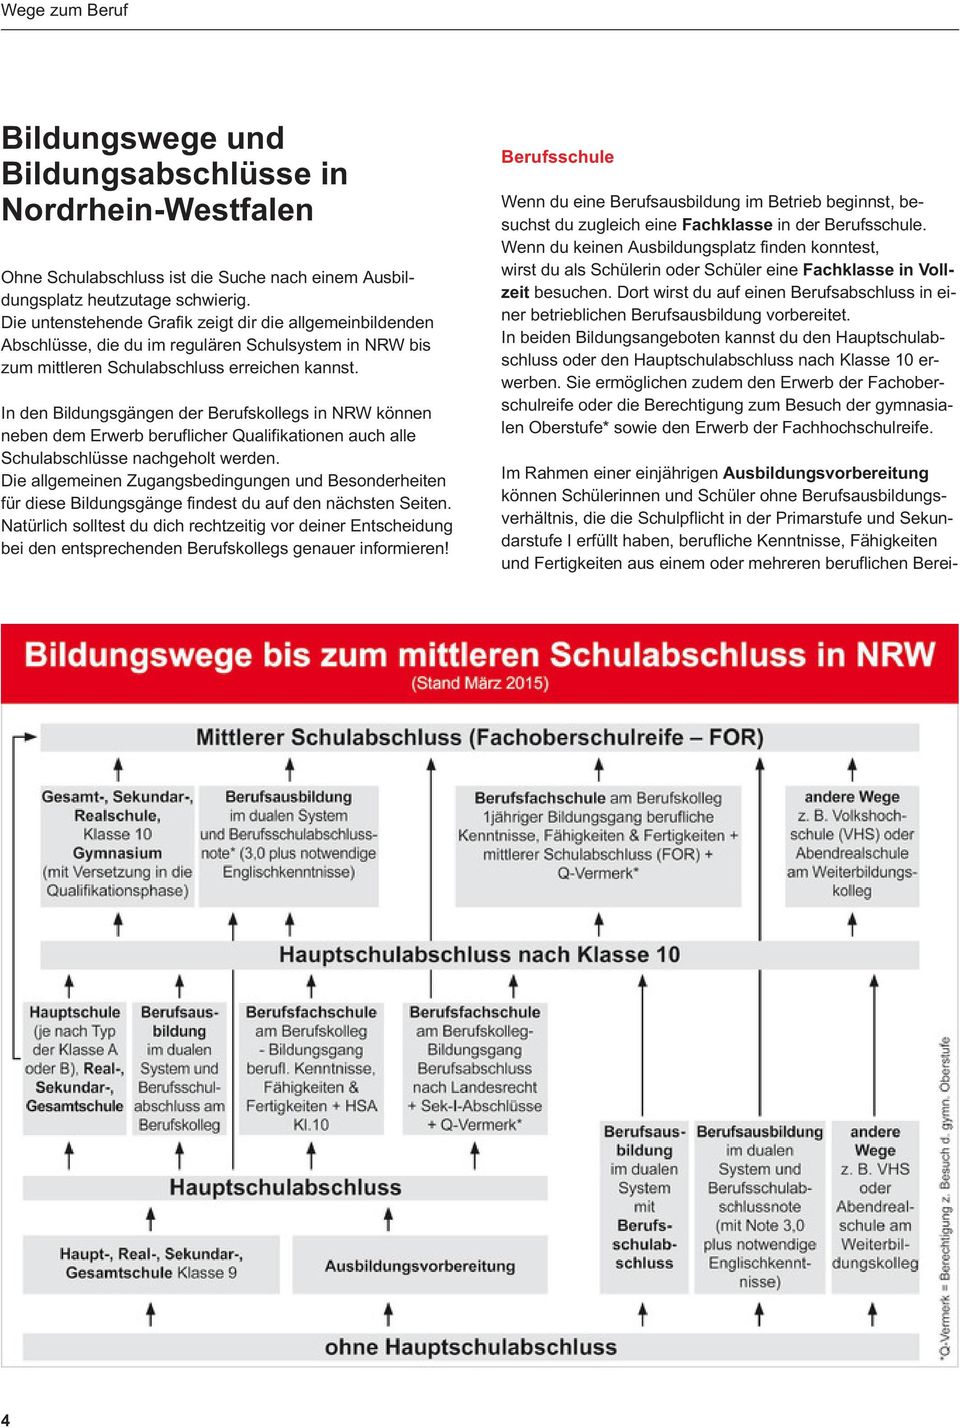 In den Bildungsgängen der Berufskollegs in NRW können neben dem Erwerb beruflicher Qualifikationen auch alle Schulabschlüsse nachgeholt werden.